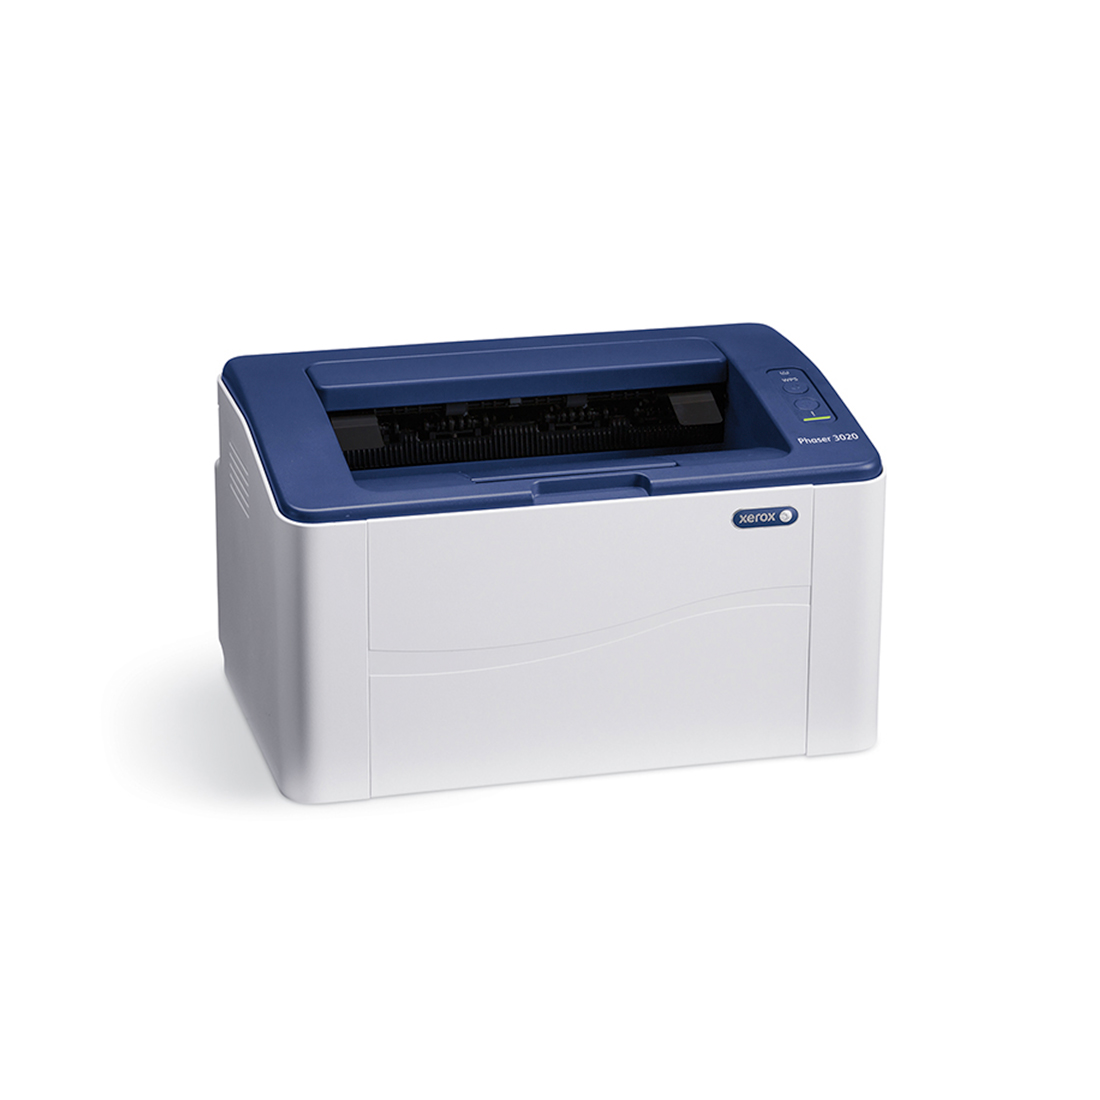 Монохромный принтер, Xerox, Phaser 3020BI, A4, Лазерный, 20 стр/мин, Нагрузка (max) 15K в месяц, 150